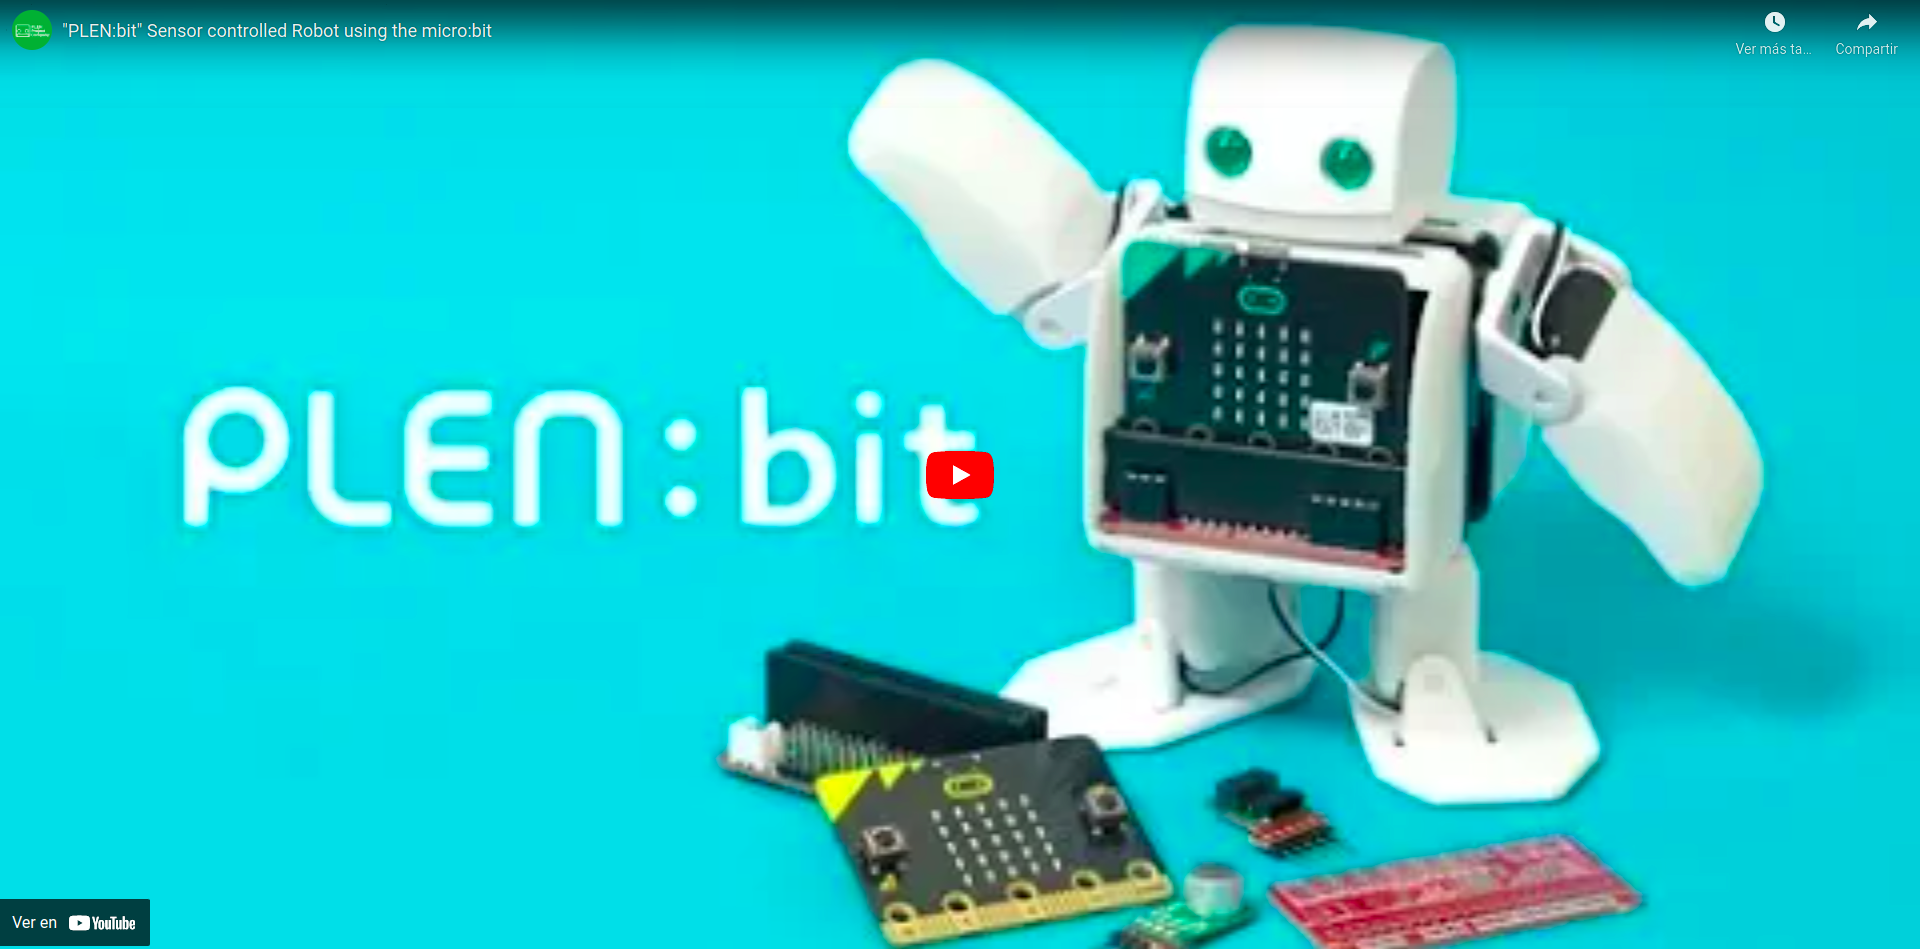 Vídeo que describe el robot PLEN:bit que utiliza los sensores de la placa micro:bit